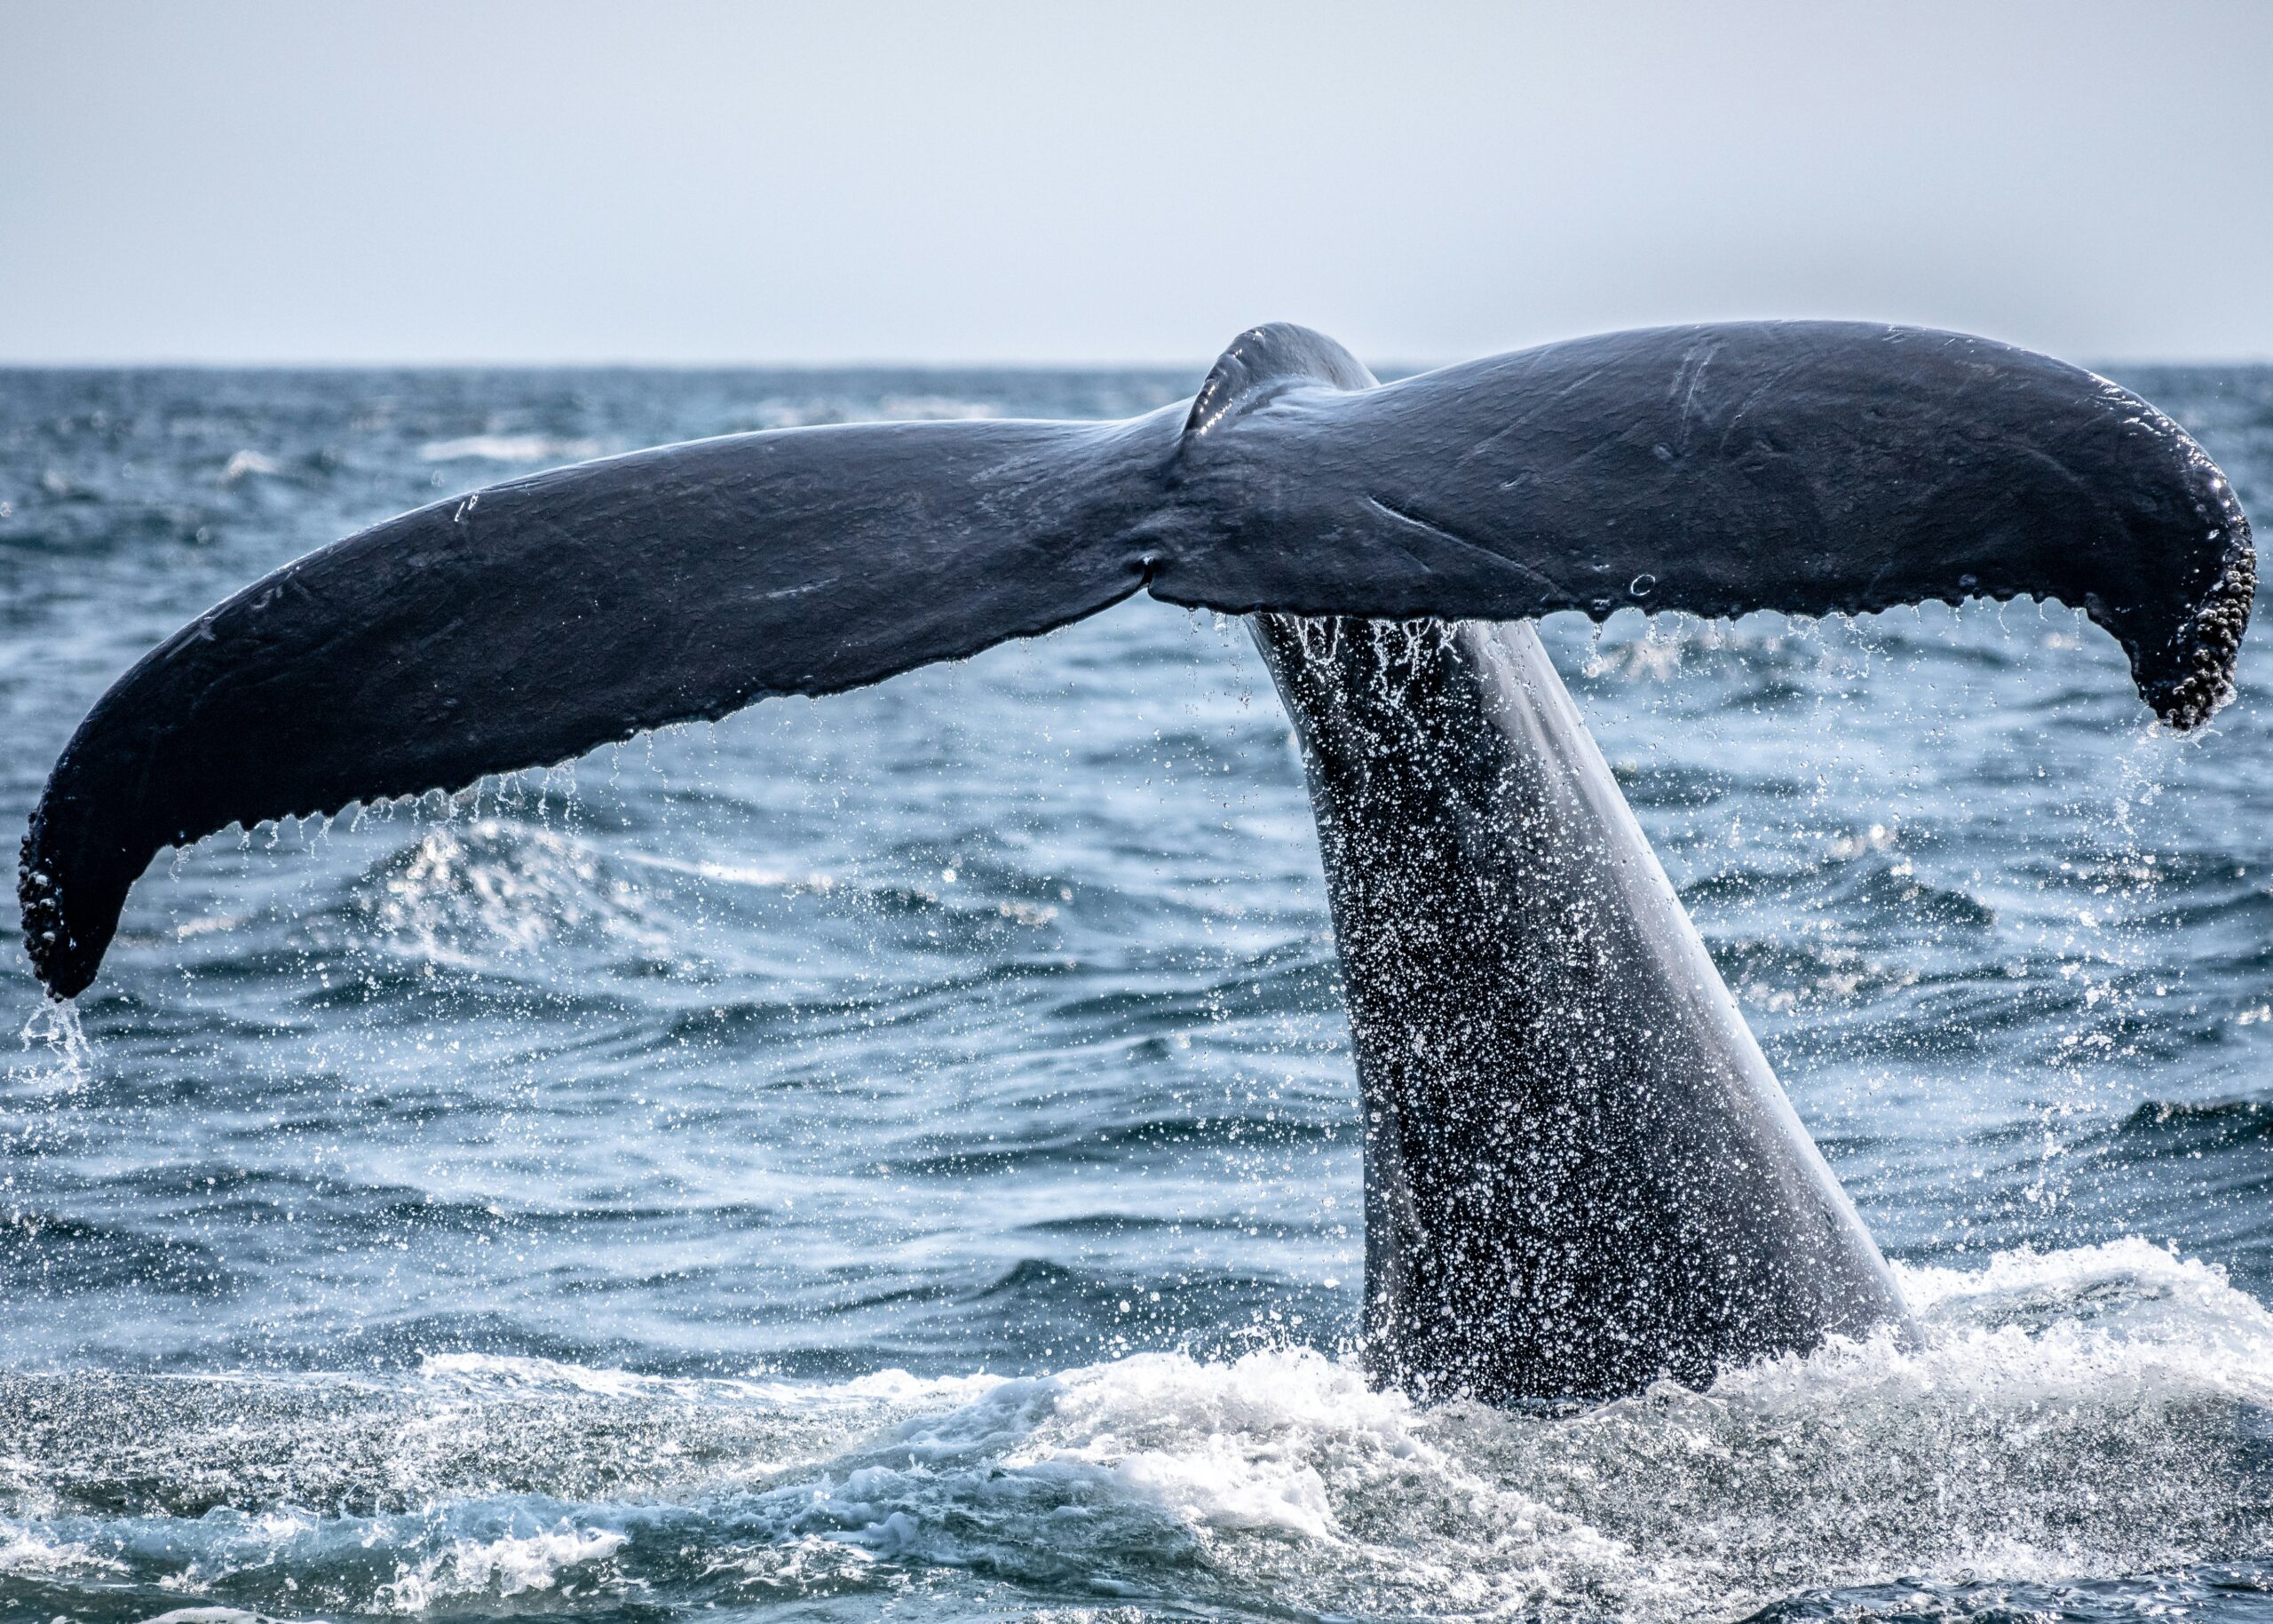 Die tiefen Tauchgänge der mächtigen Wale helfen dabei, die Nährstoffe innerhalb der Meeresschichten zu verteilen. Toll, was? © Richard Sagredo/unsplash